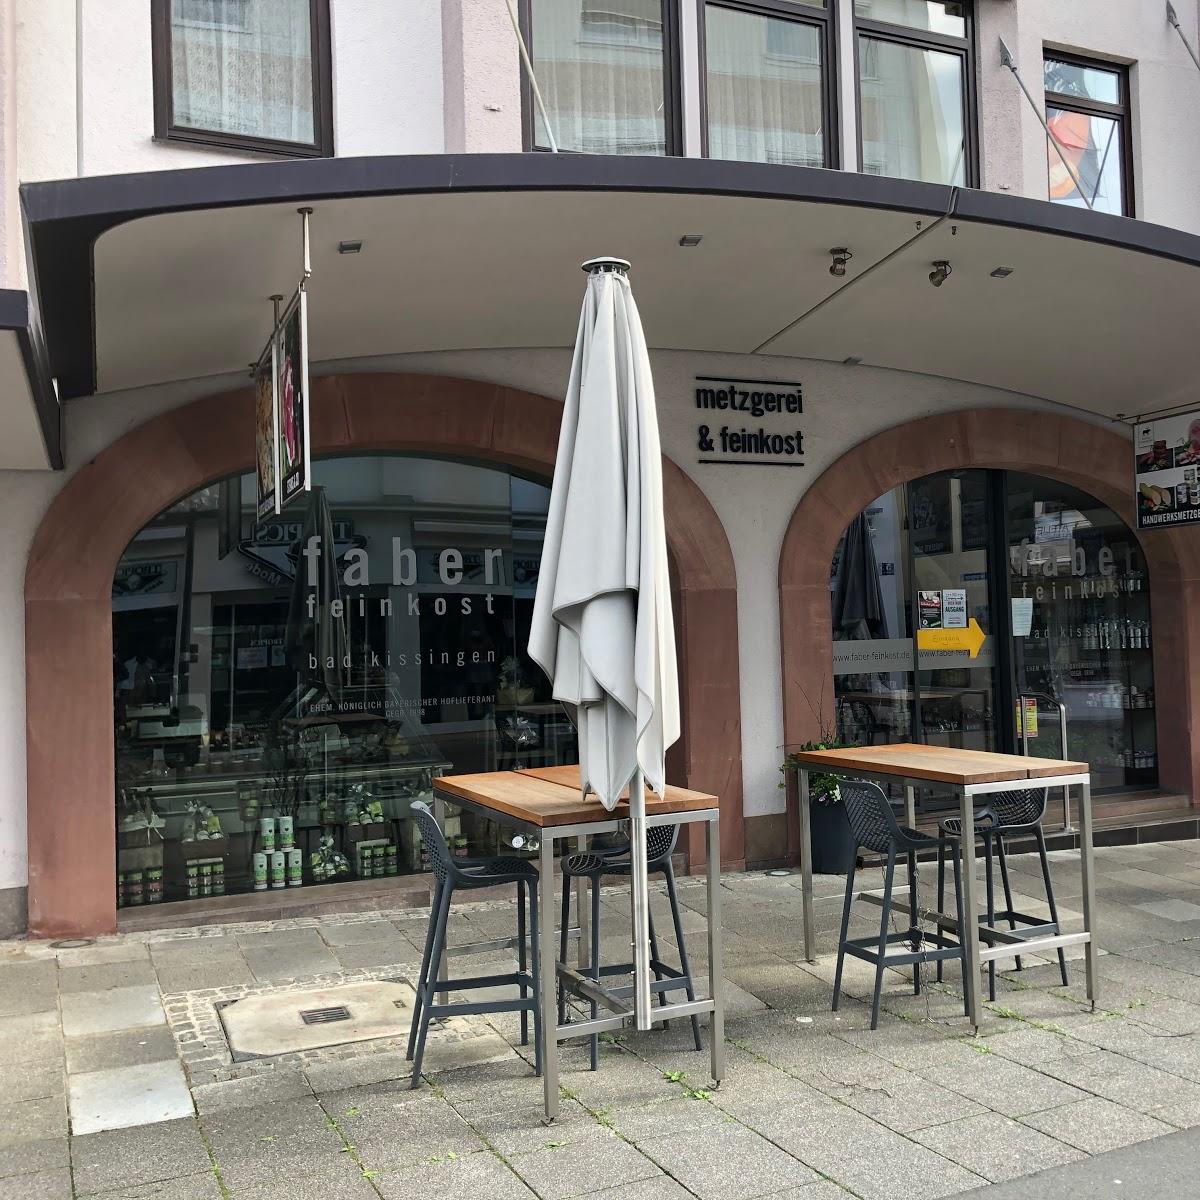 Restaurant "faber [eat & grill I 1898]" in Bad Kissingen